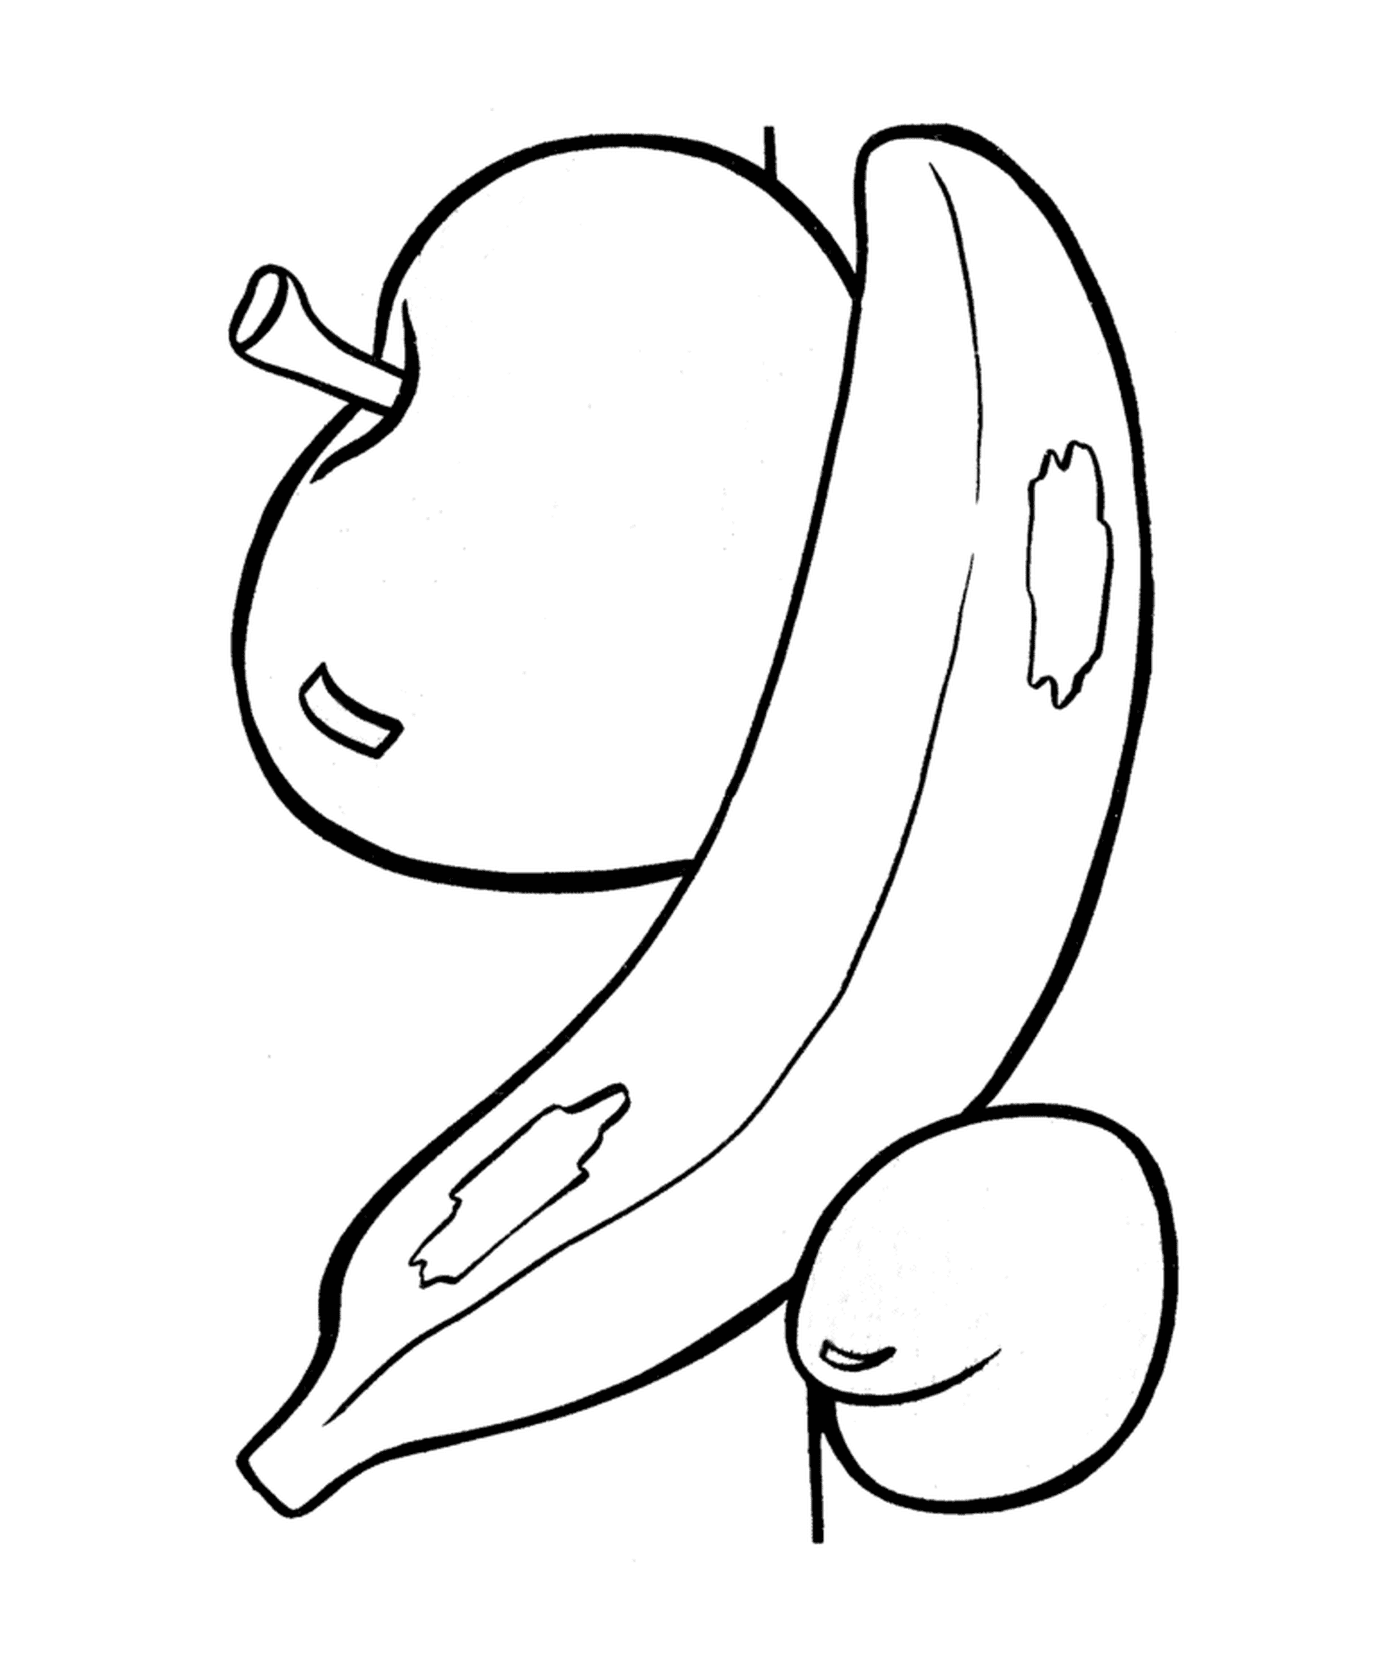  Ein Apfel mit einer Banane darauf 